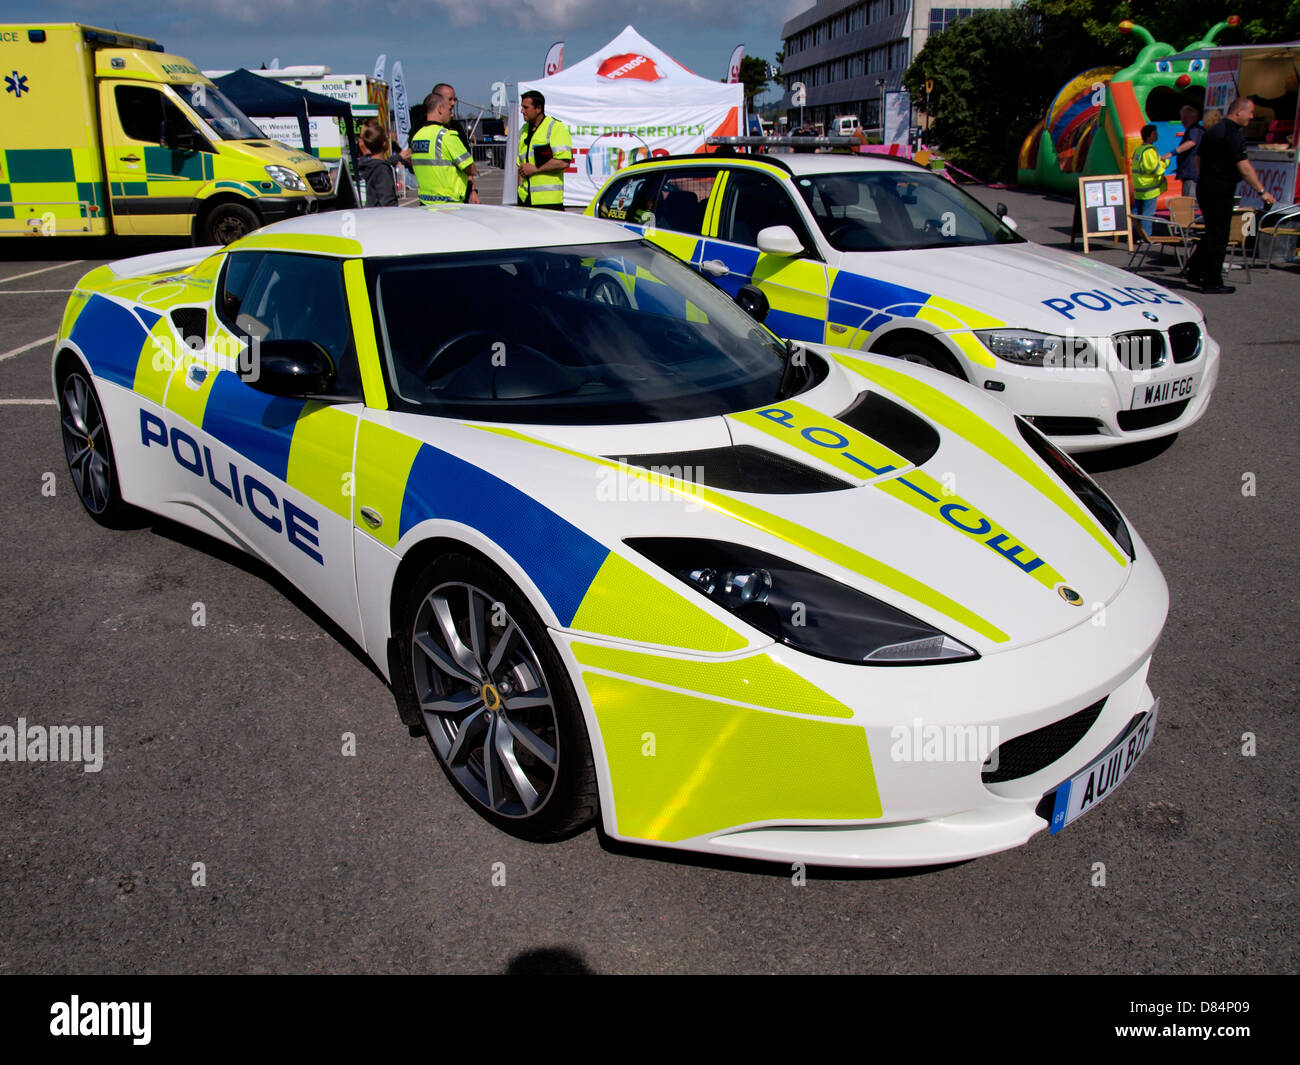 Policía de Devon y Cornwall Lotus coche, está siendo utilizado por los agentes para elevar la conciencia sobre la seguridad vial durante el verano. Foto de stock